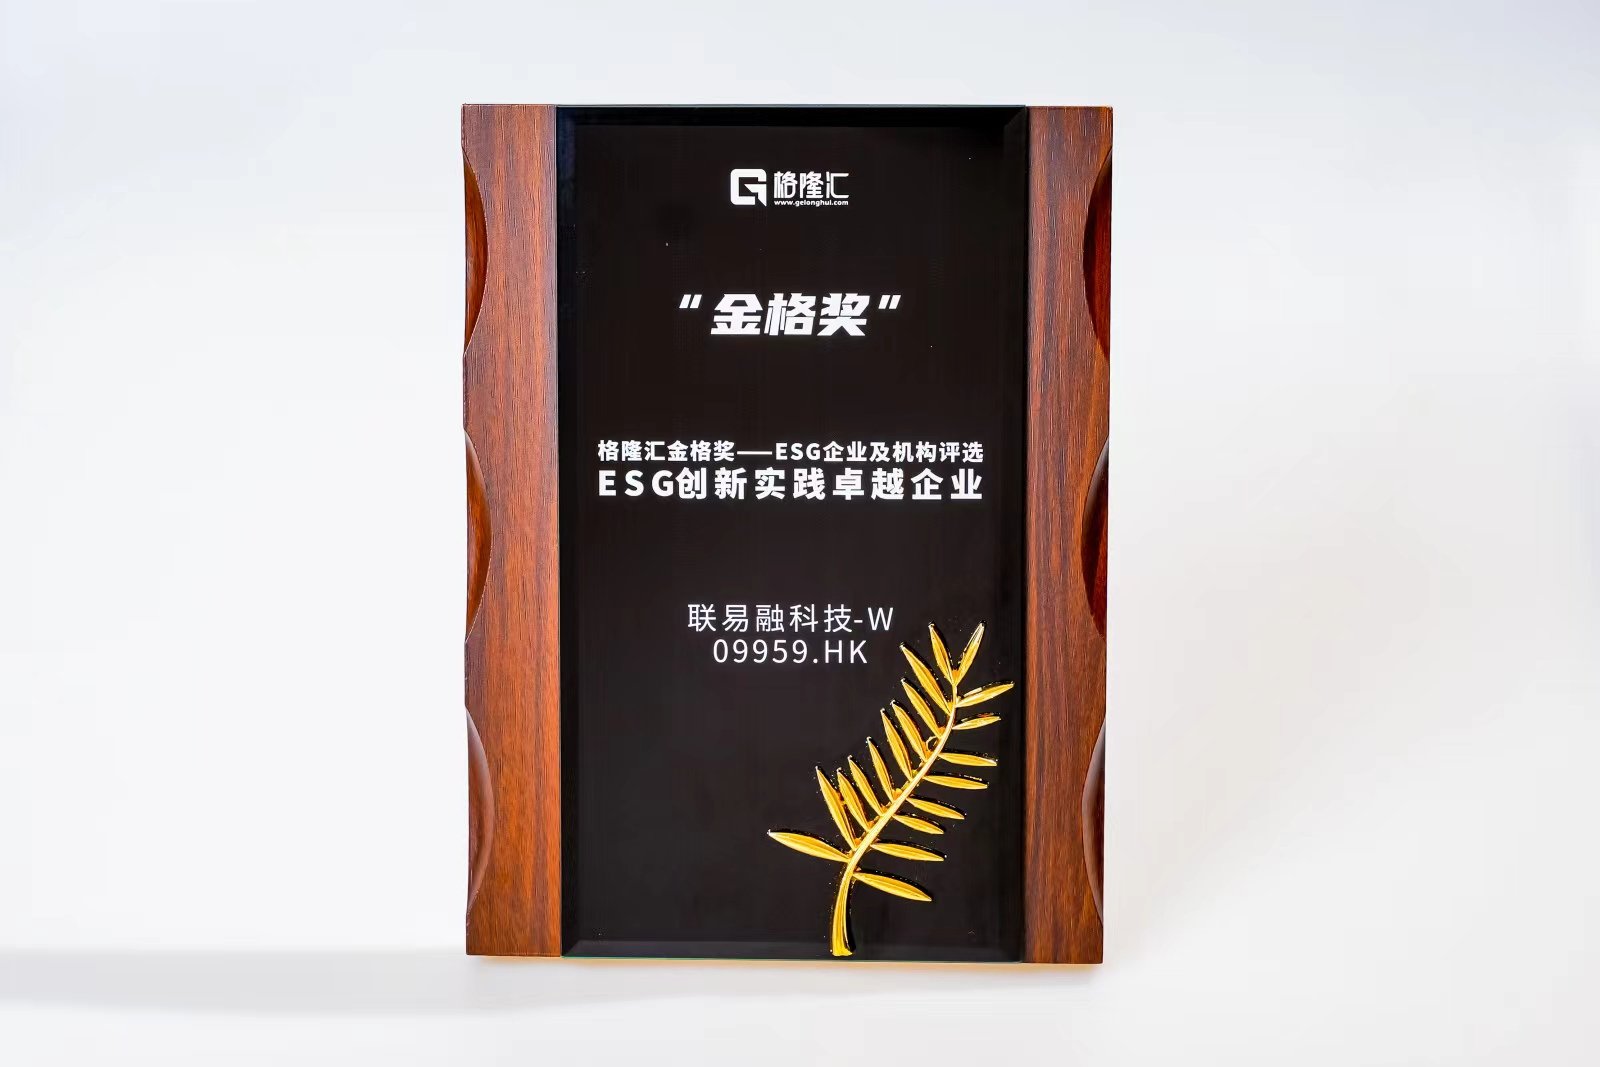 联易融科技-W(9959.HK)荣获格隆汇金格奖·ESG创新实践卓越企业  第1张